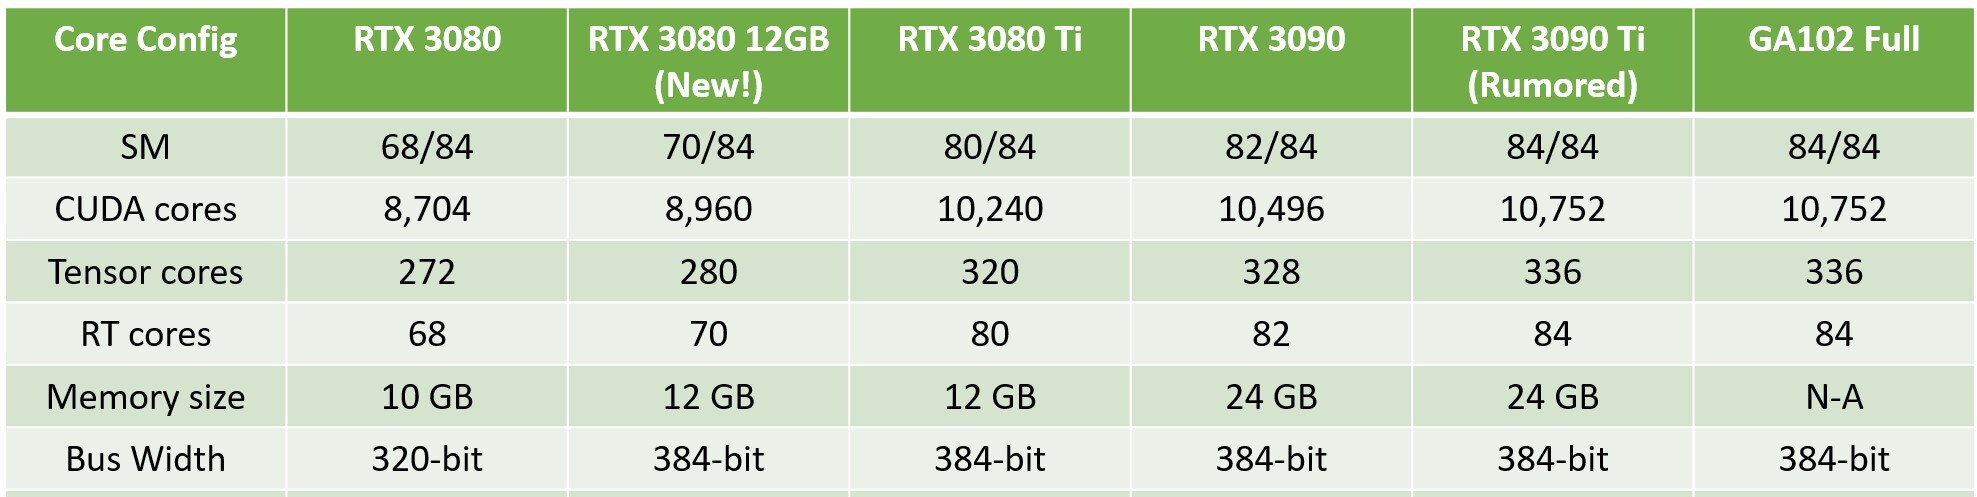 انویدیا کارت گرافیک GeForce RTX 3080 12GB را به طور رسمی معرفی کرد؛ سریع و قوی برای بازی و رندر